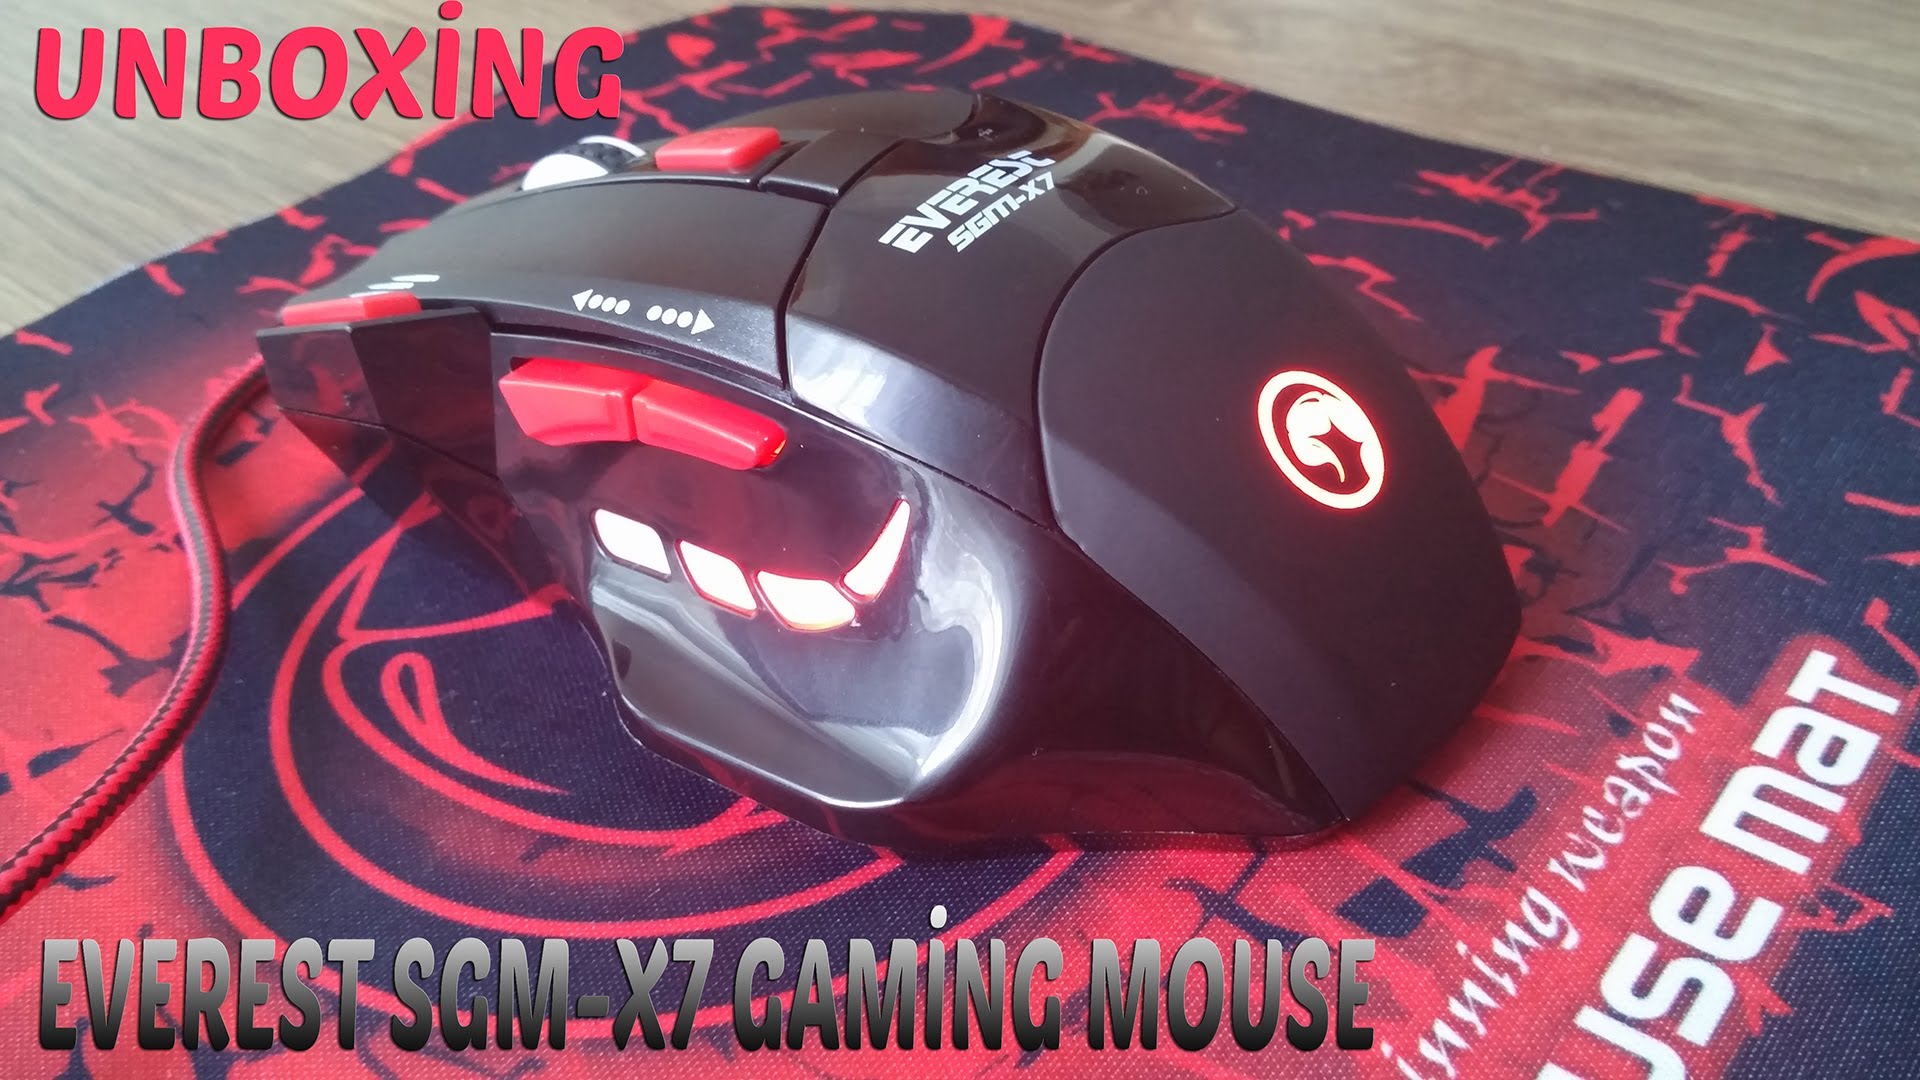 X7 видео. Игровая мышь x7. X7 Gaming Mouse. Игровая мышь 7 скоростей 2011 год. Comp Mouse Gaming 1200x800.